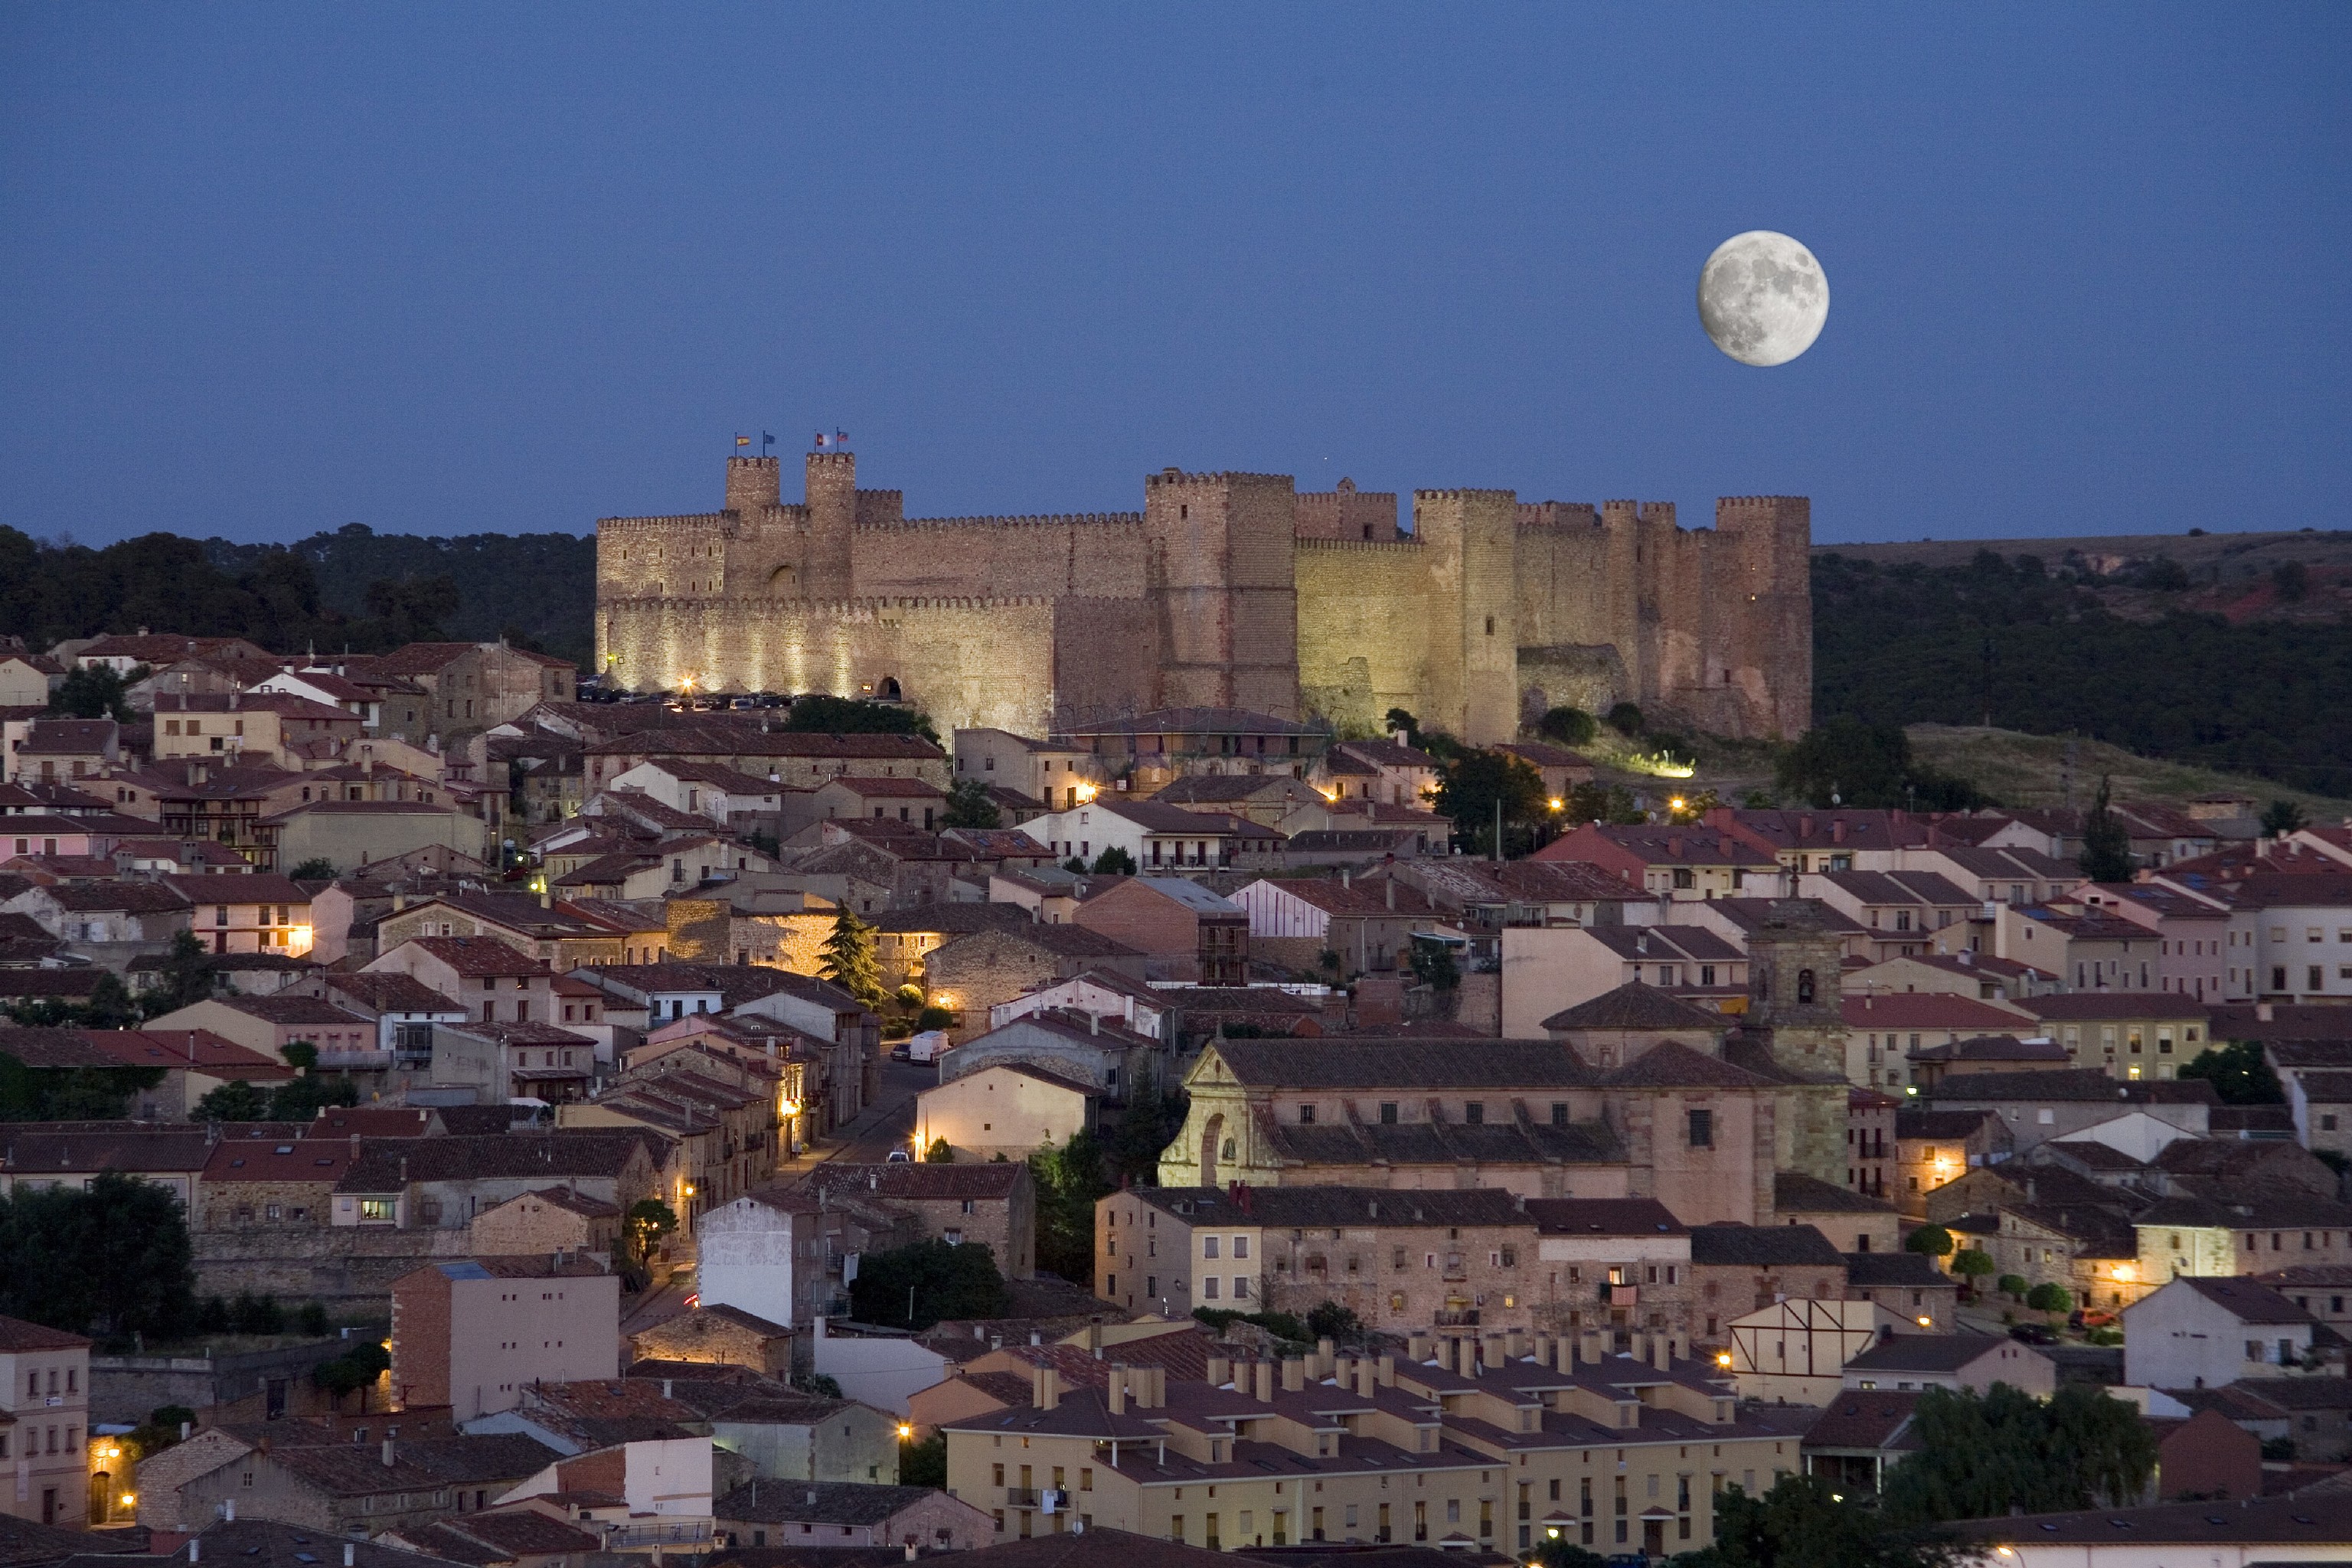 Panorámica de Sigüenza con el castillo-Parador dominando el paisaje.